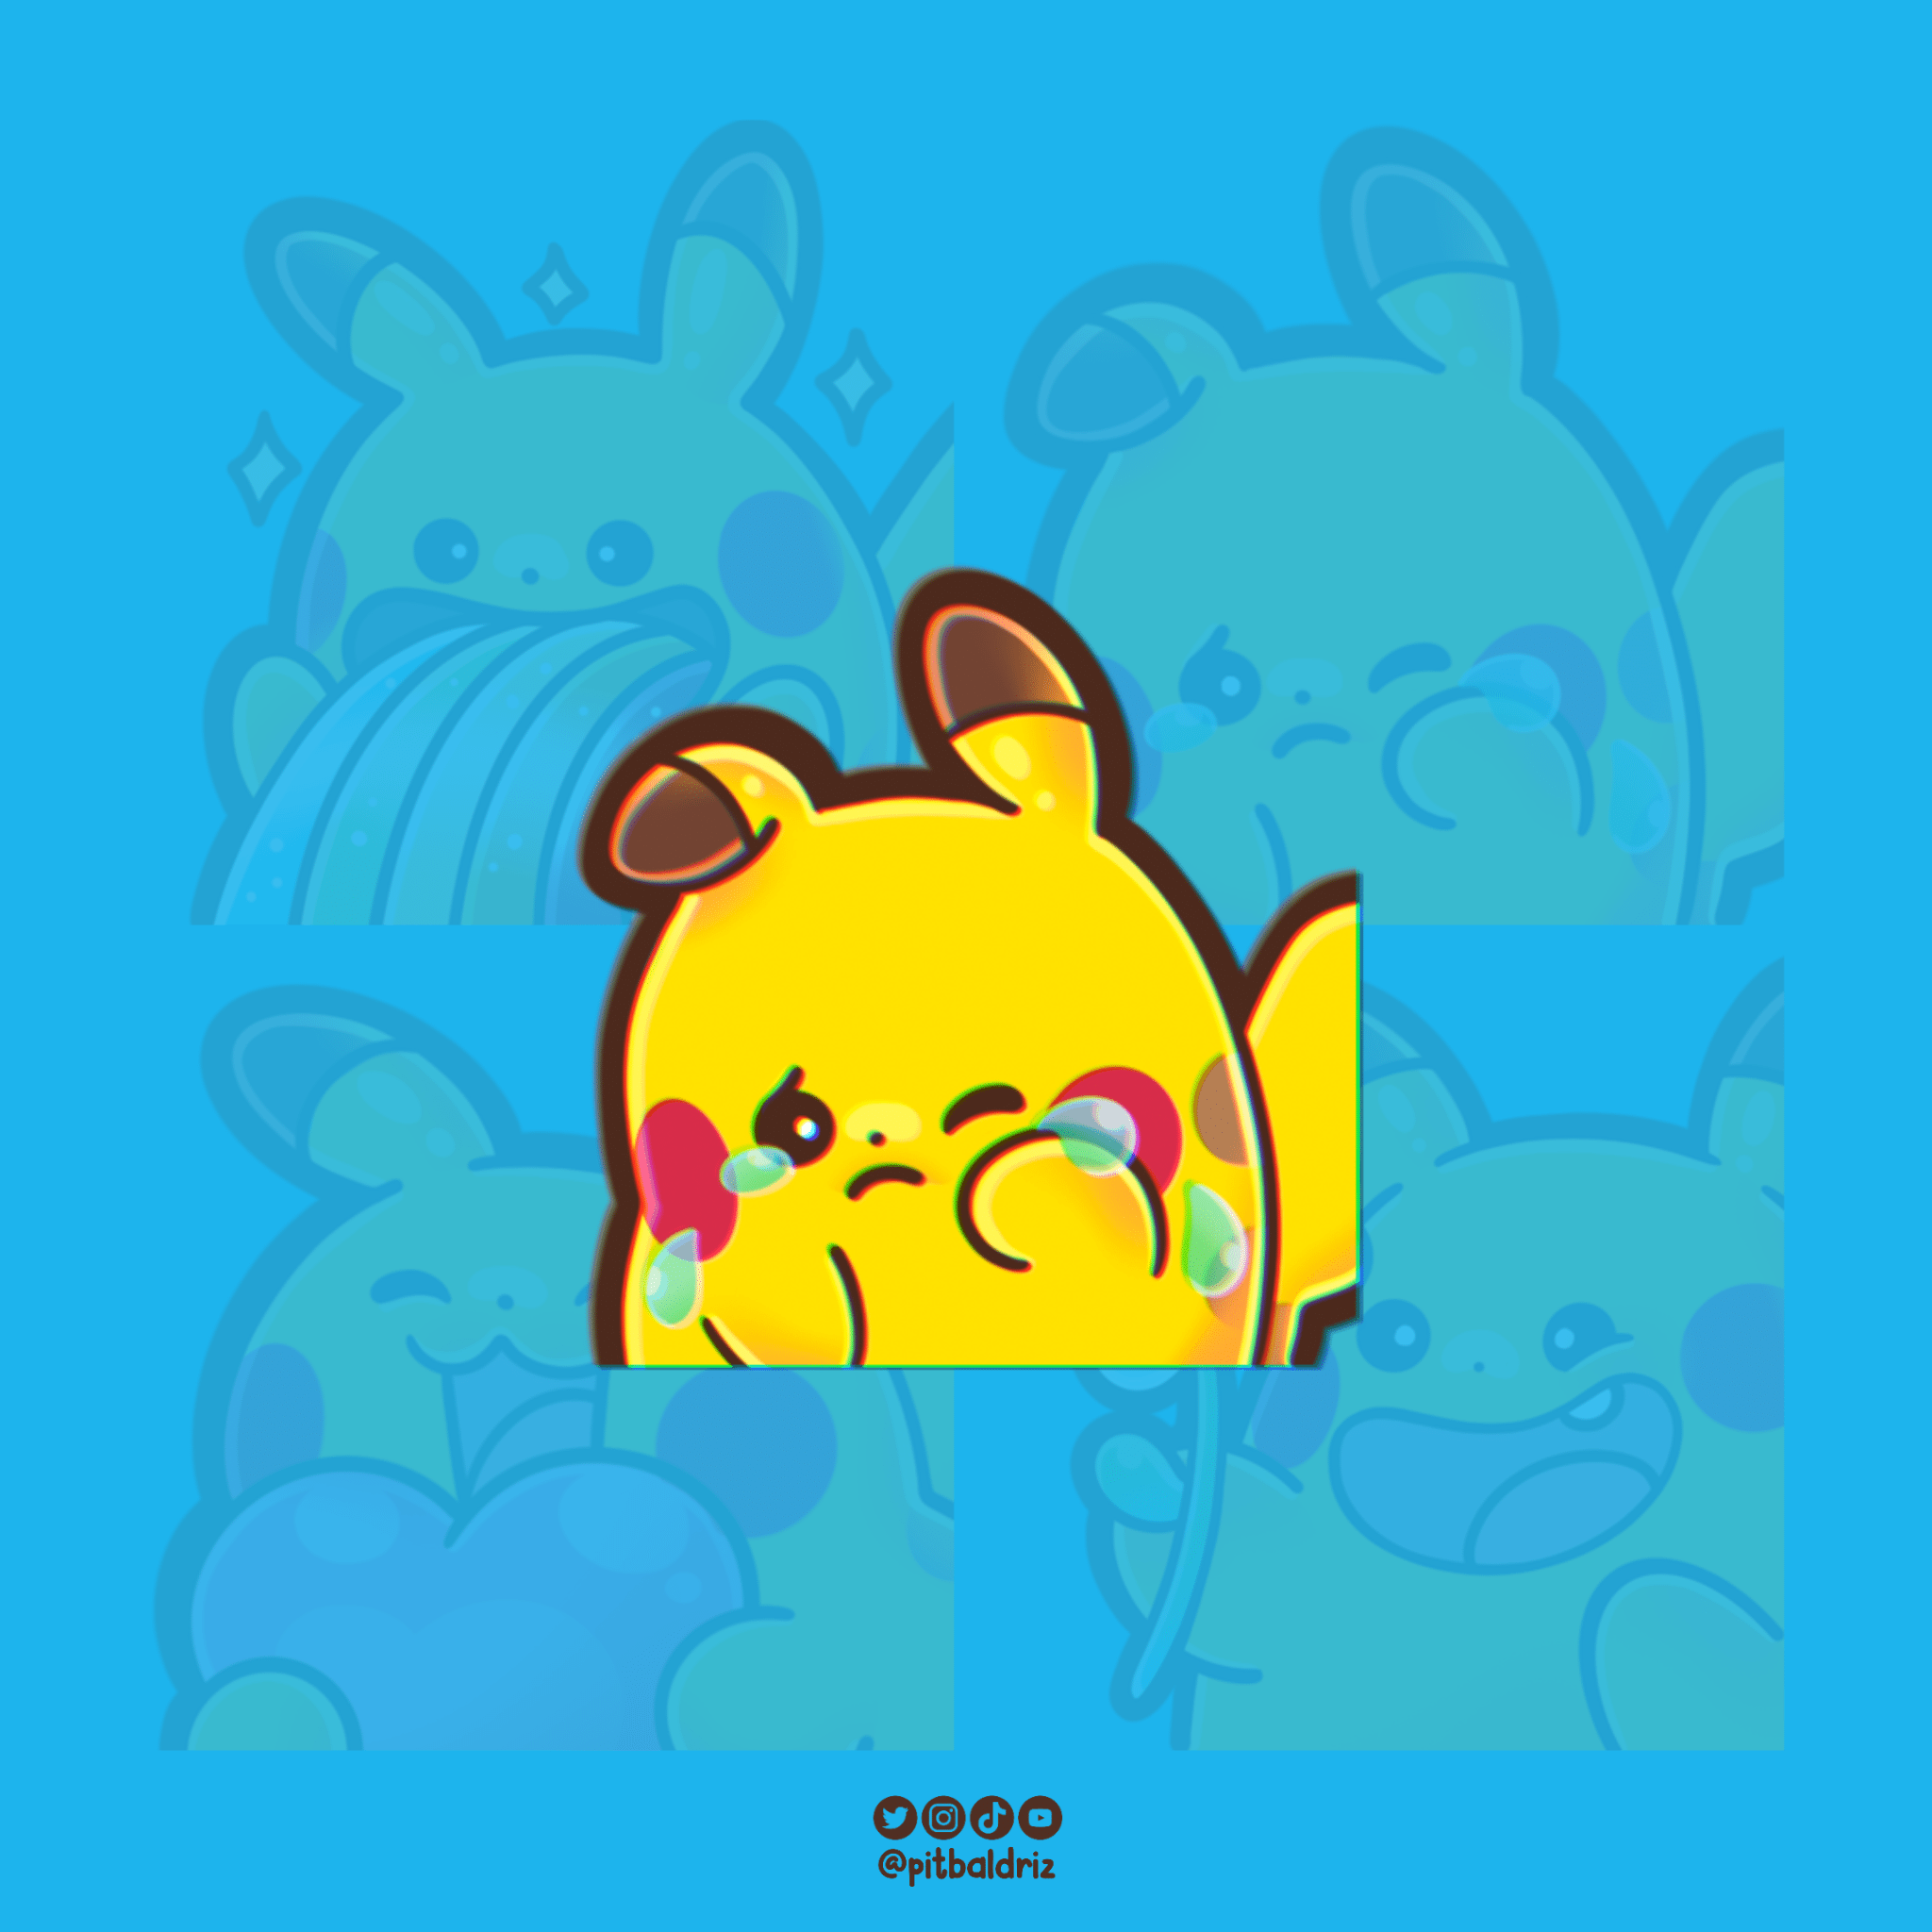 Pikachu emote sad